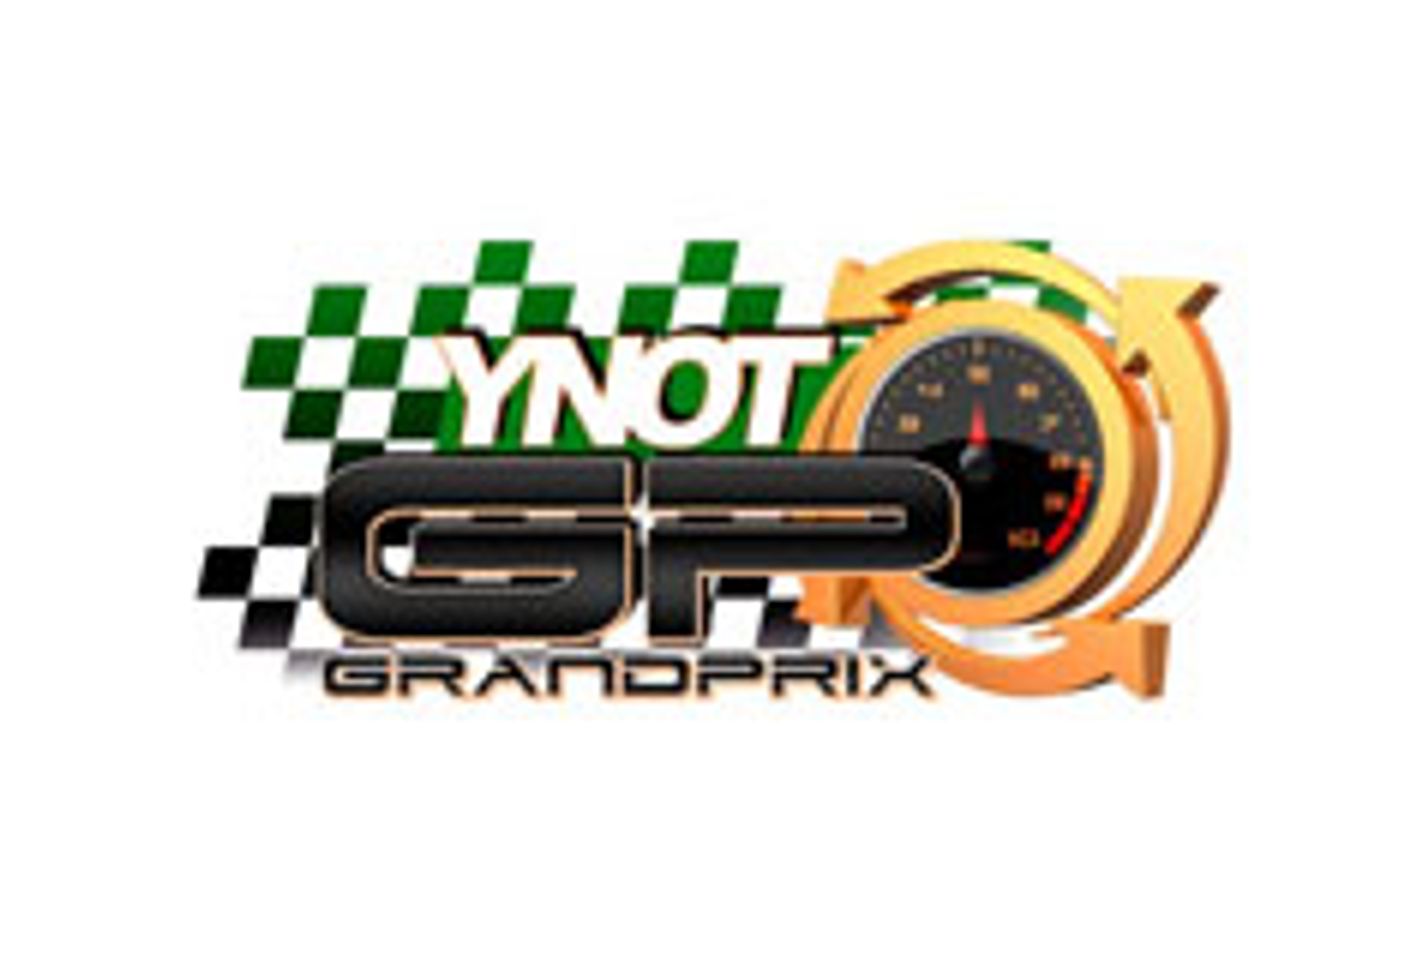 YNOT Grand Prix Phoenix: The Gauntlet has been Thrown